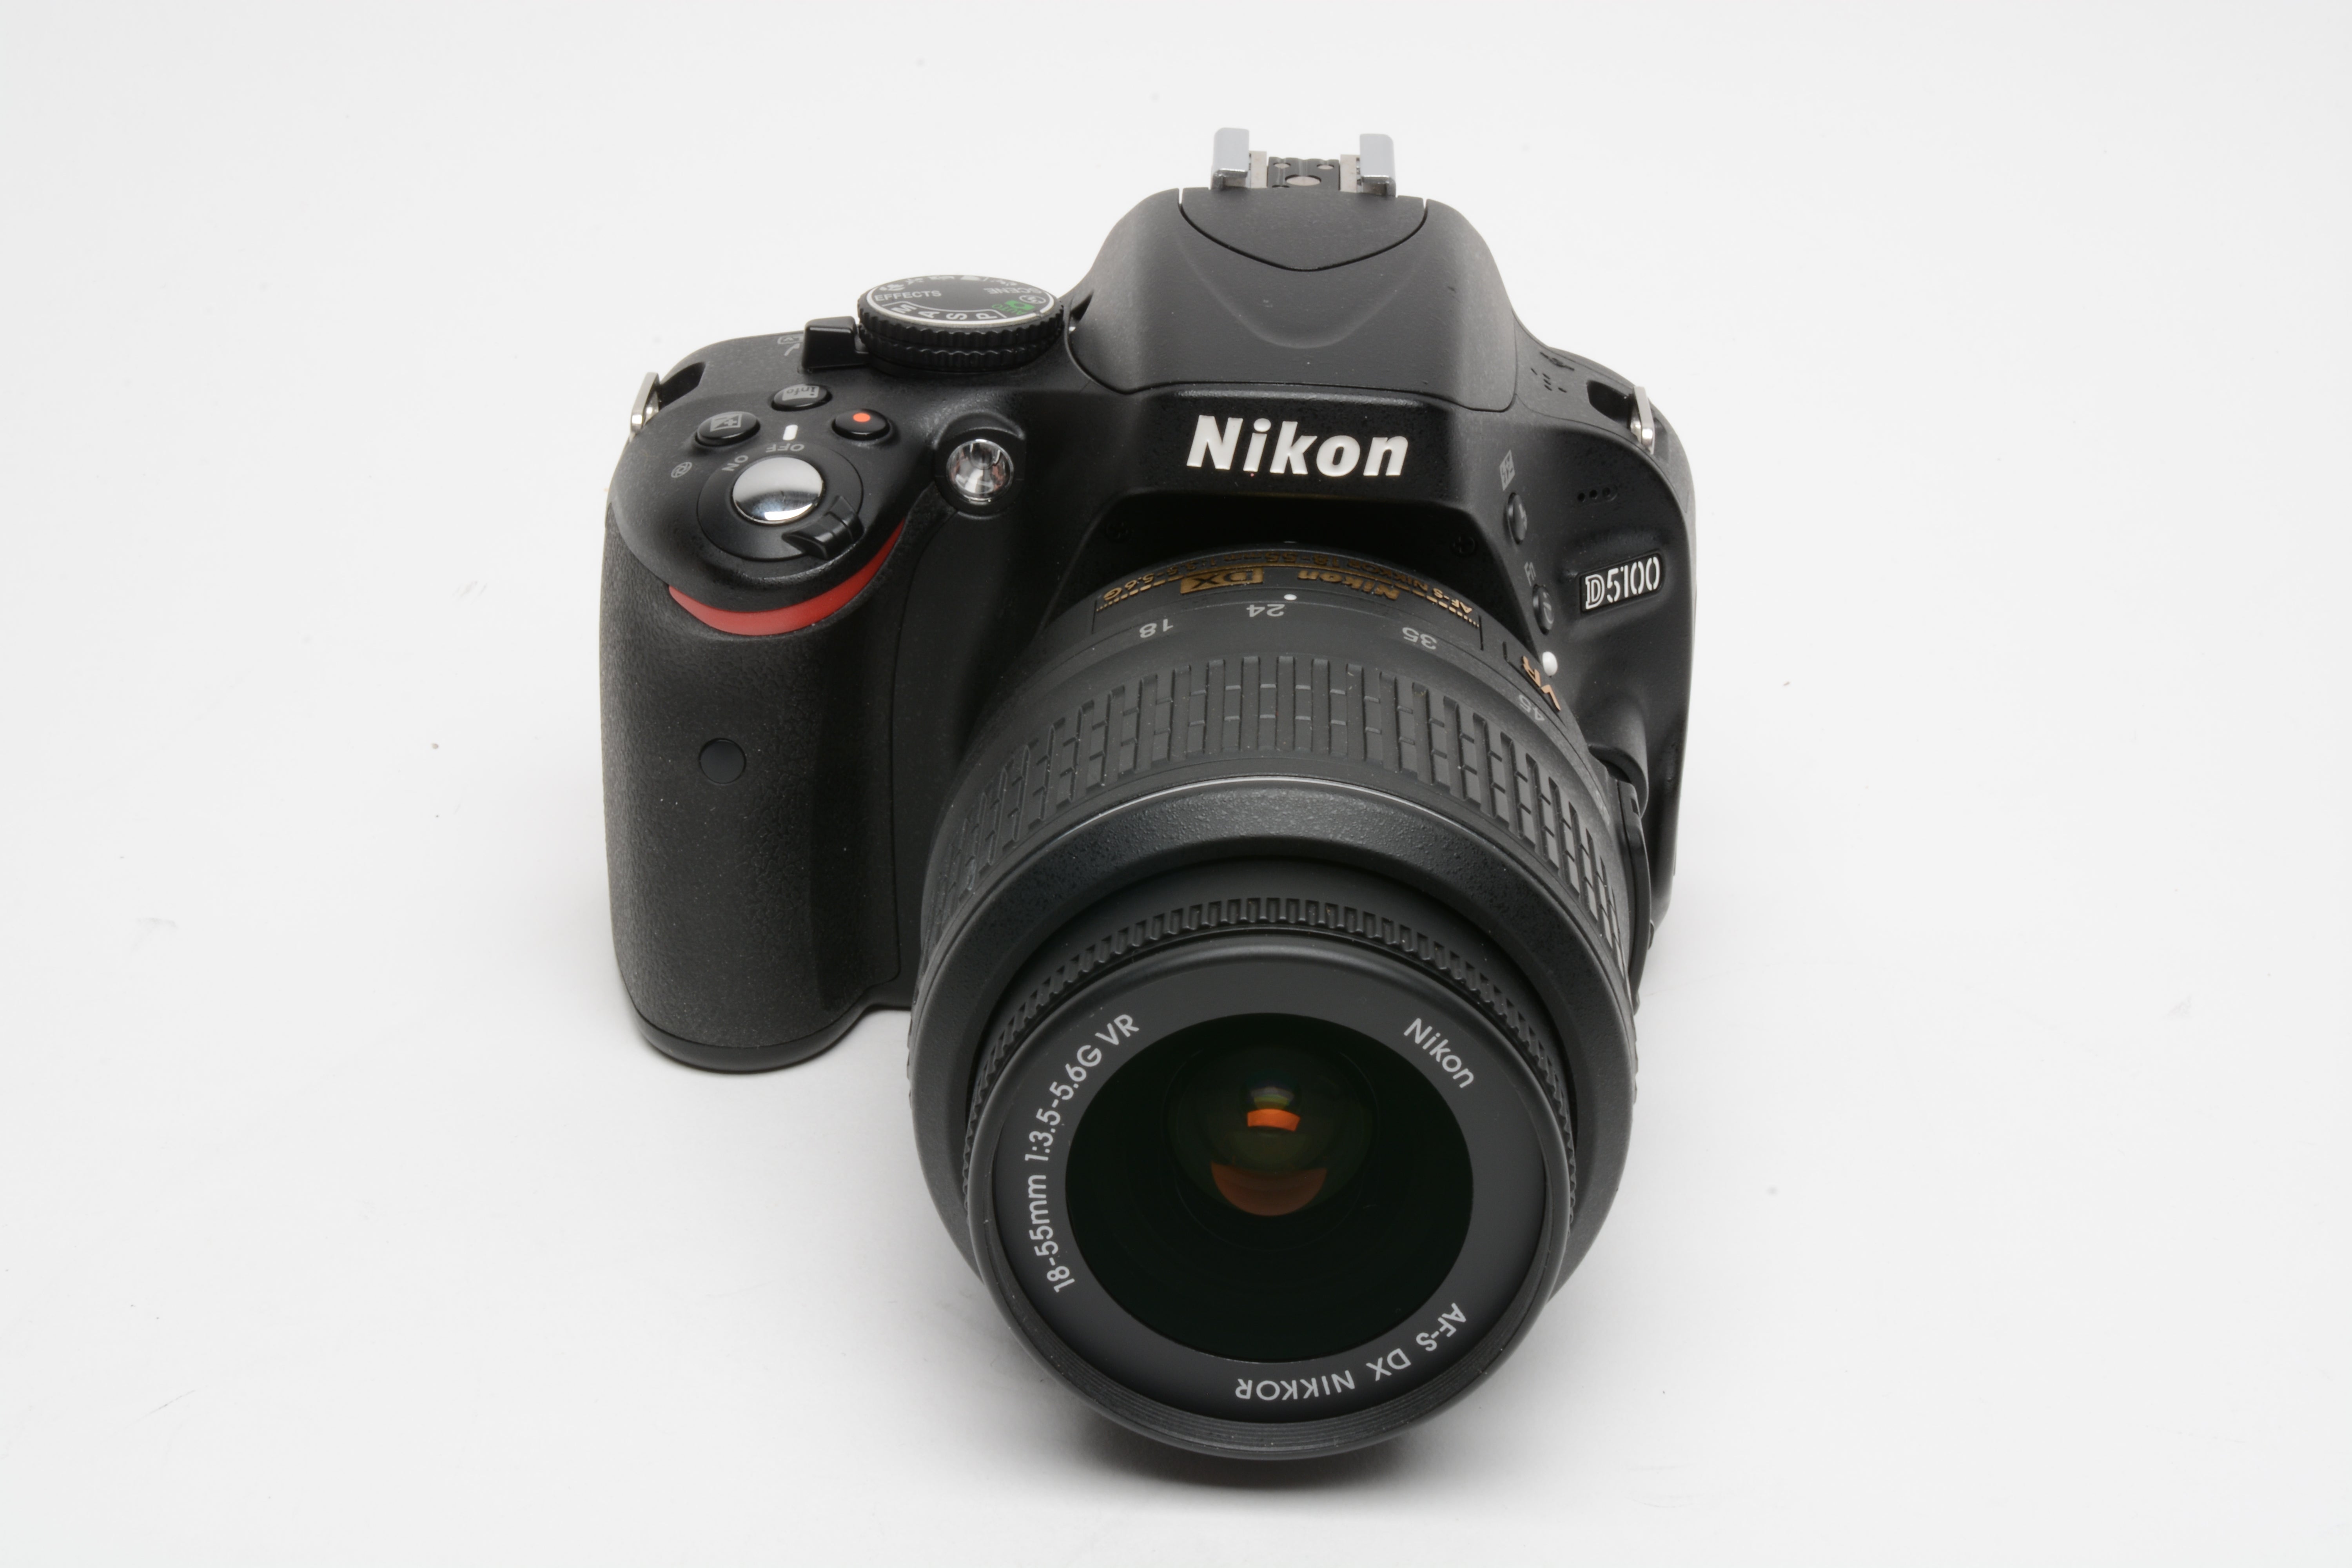 Nikon D5100 DSLR w/Nikkor 18-55mm F3.5-5.6G VR lens, 8354 Acts